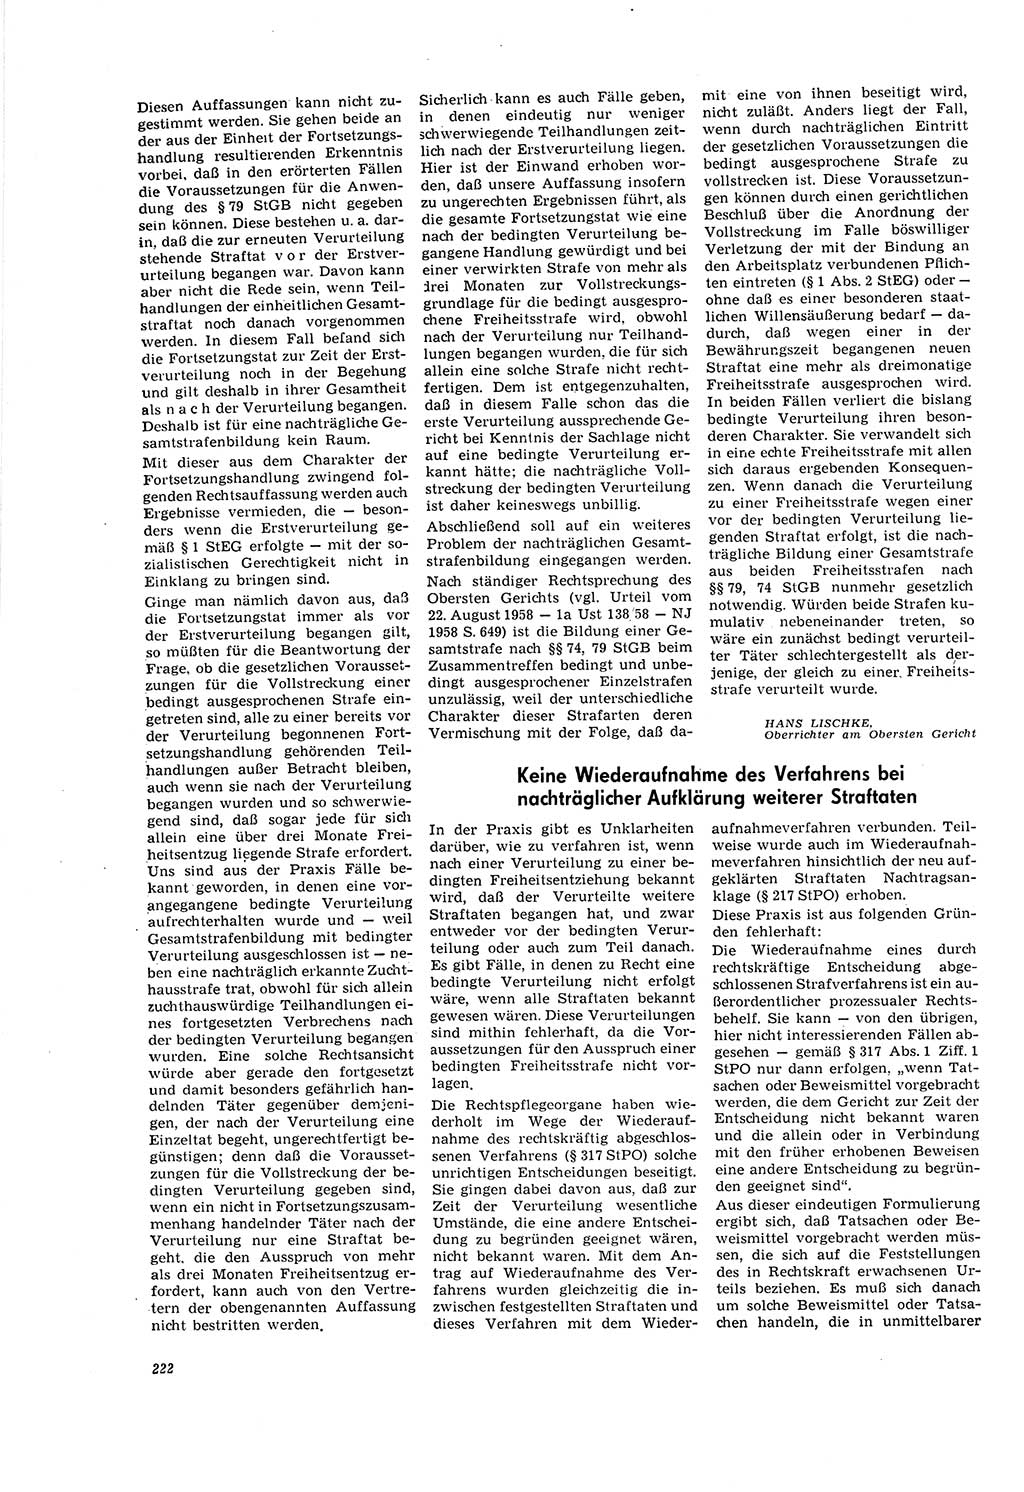 Neue Justiz (NJ), Zeitschrift für Recht und Rechtswissenschaft [Deutsche Demokratische Republik (DDR)], 20. Jahrgang 1966, Seite 222 (NJ DDR 1966, S. 222)